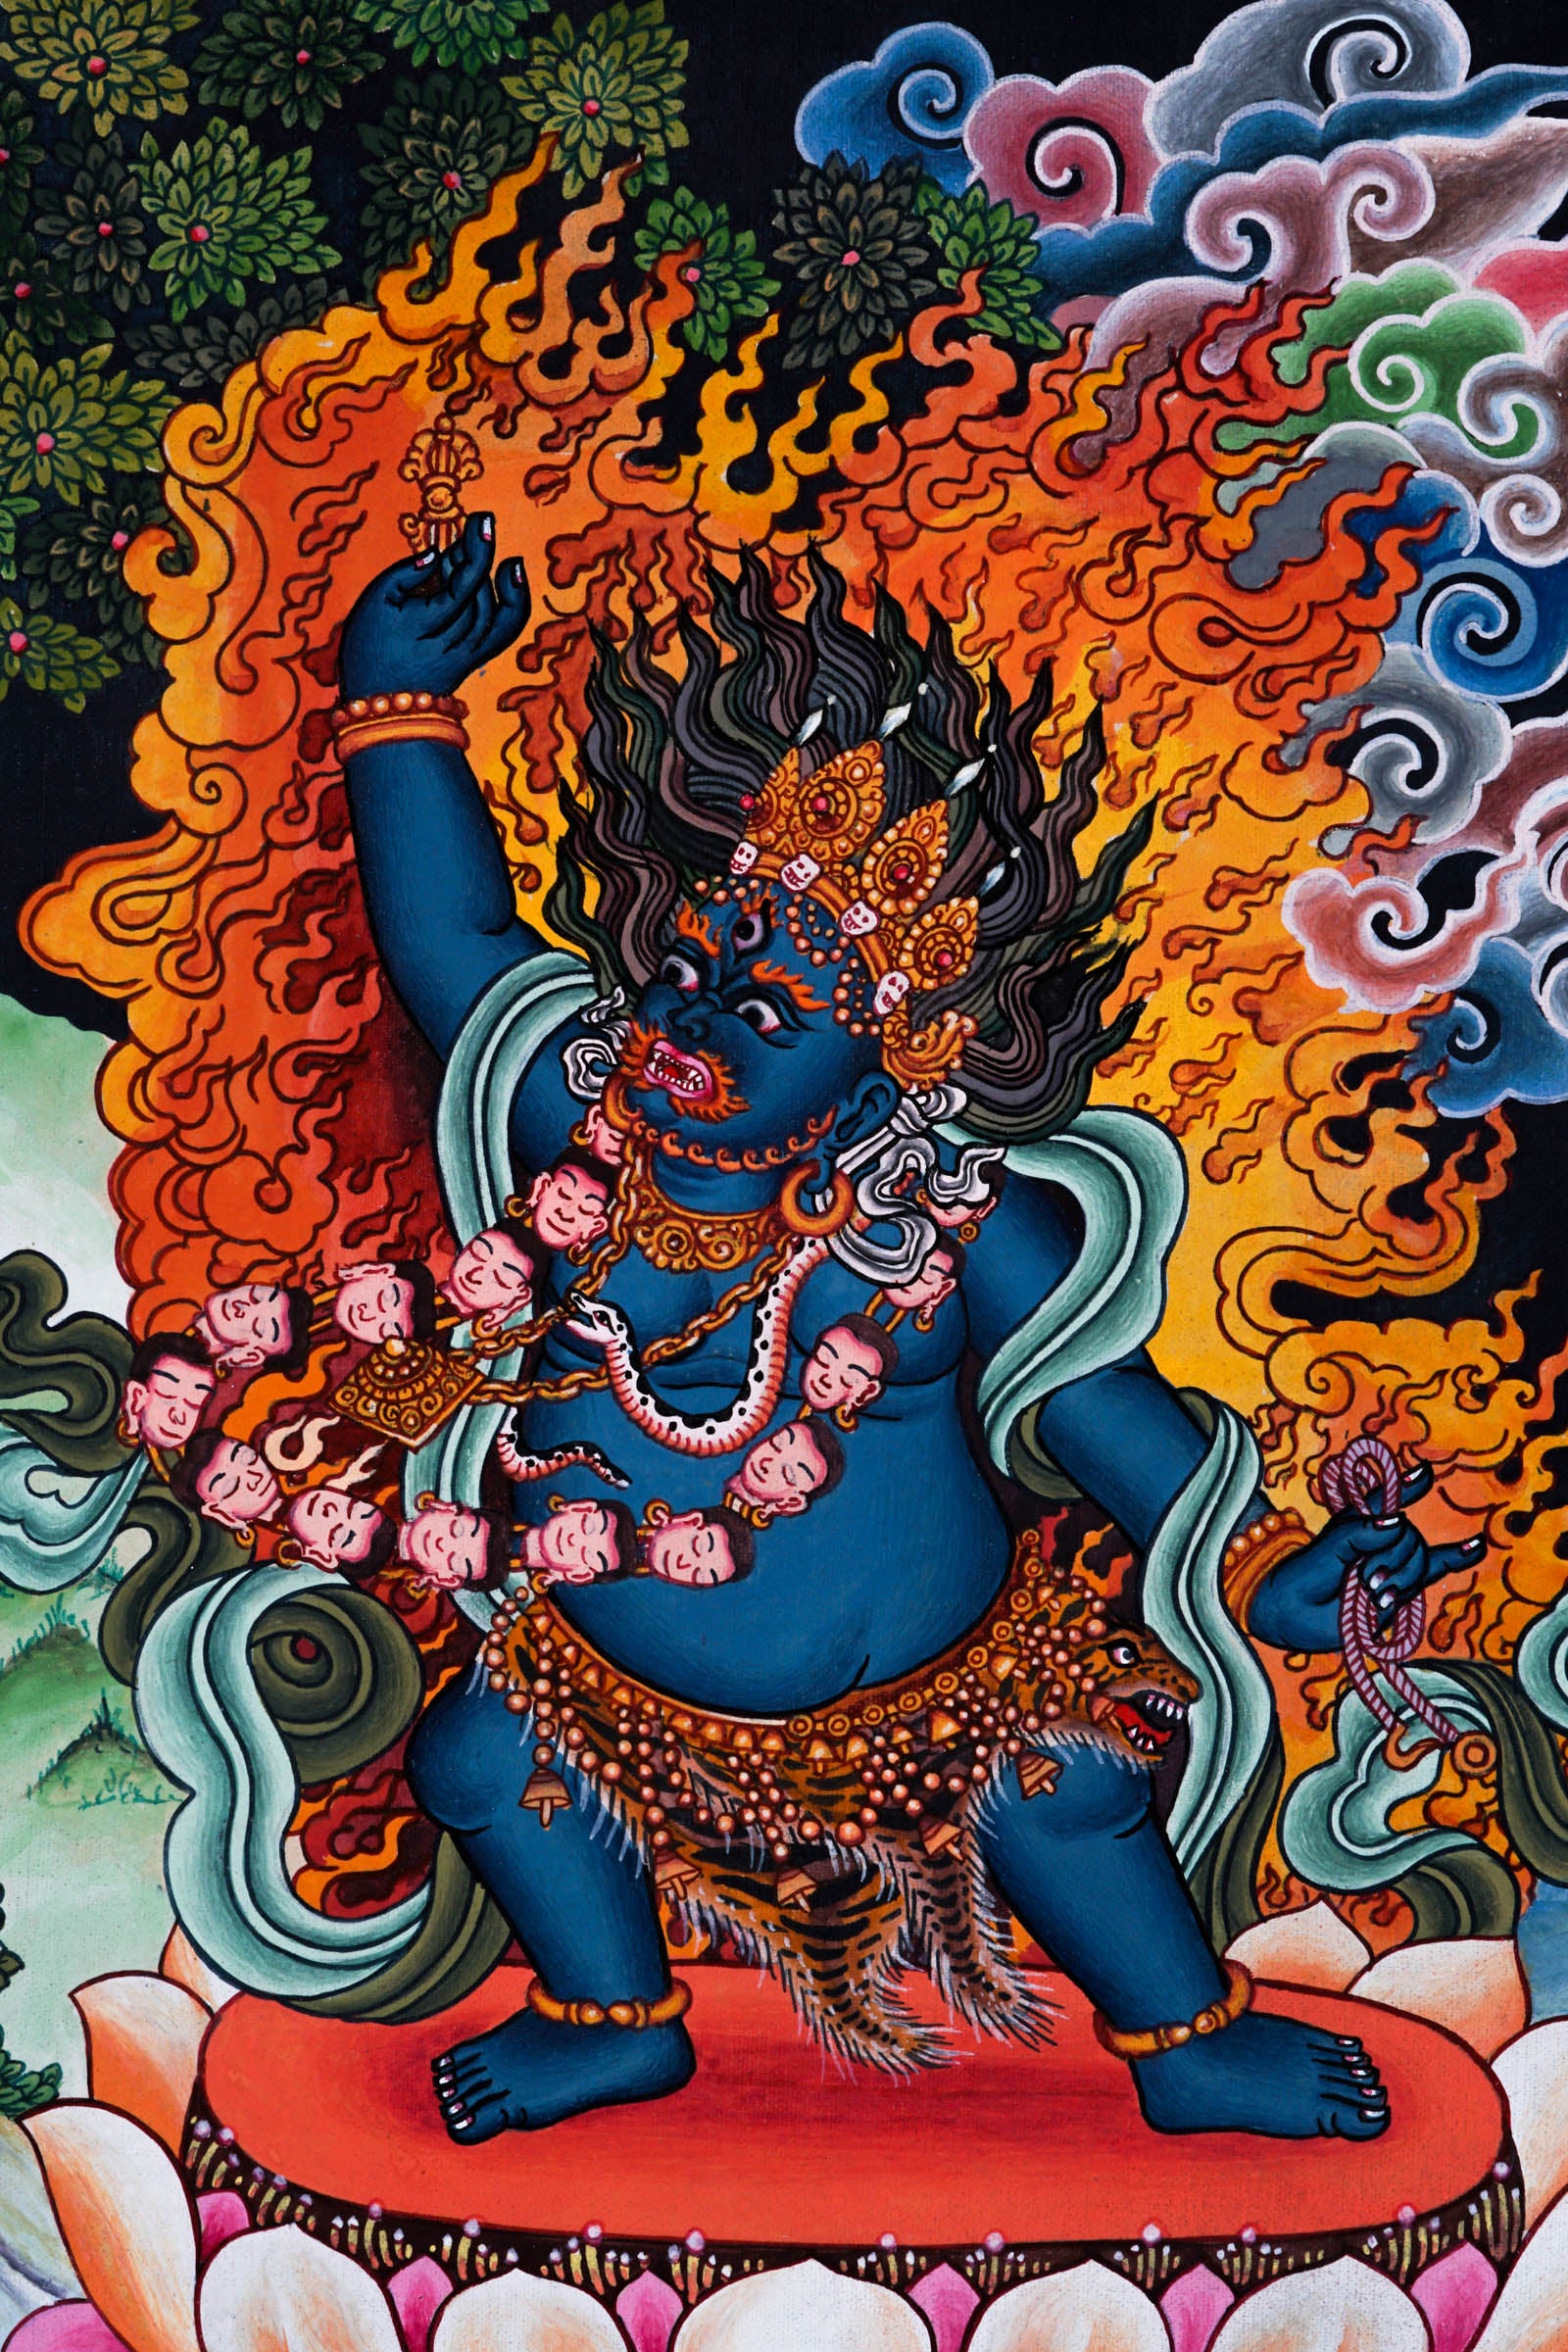 Wrathful deity - Mahakala Thangka - Best handpainted thangka painting - LuckyThanka